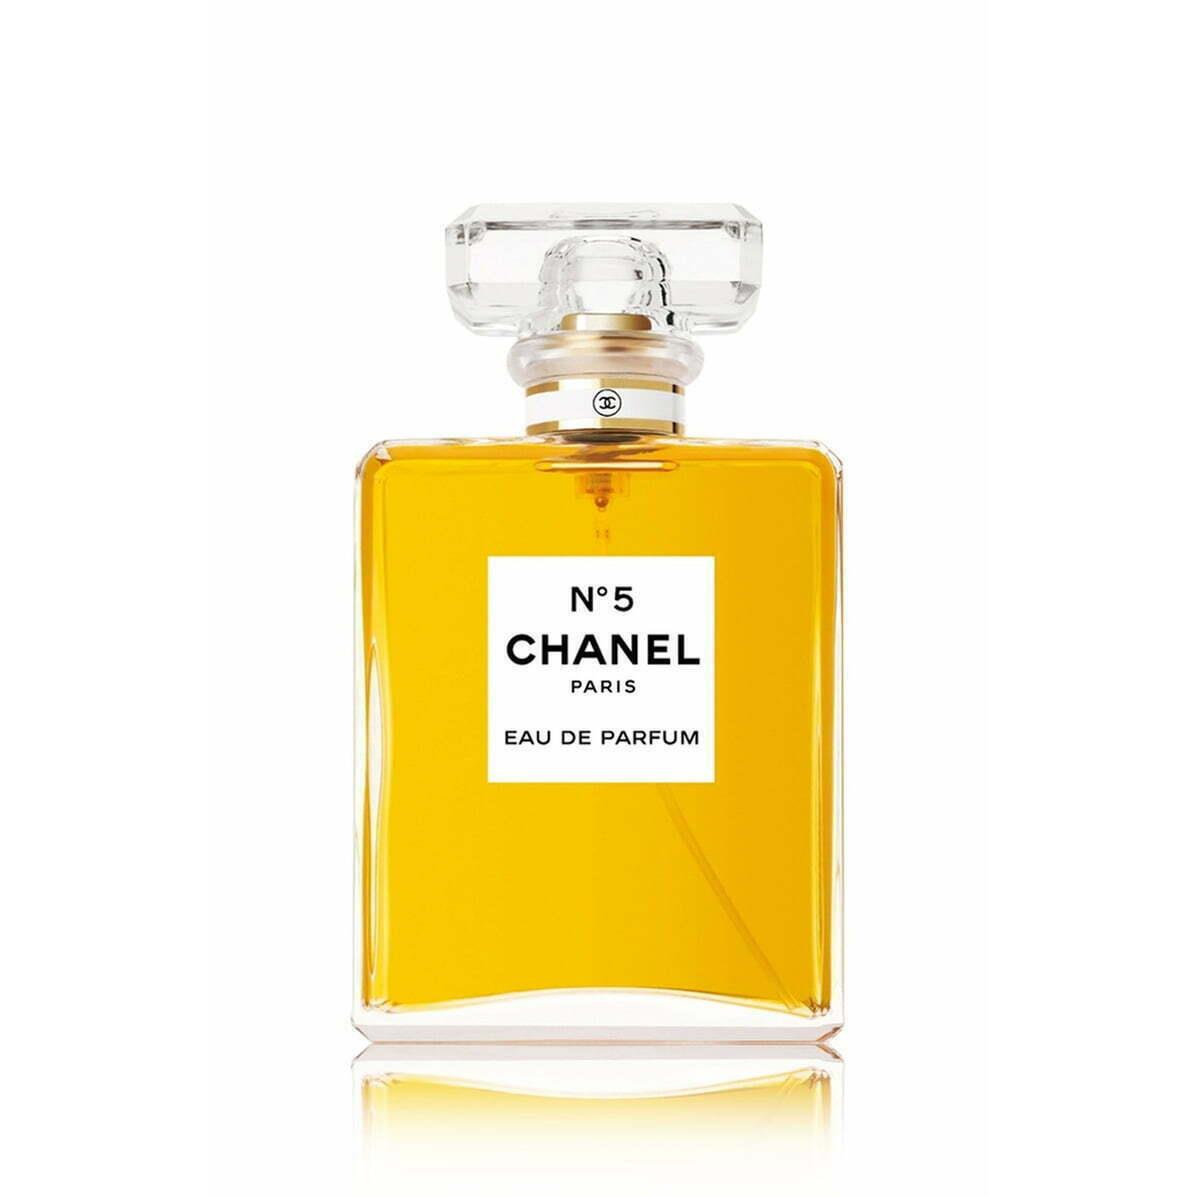 Chanel N 5 Eau De Perfum Edp Spray Size 200 ml / 6.8 fl oz